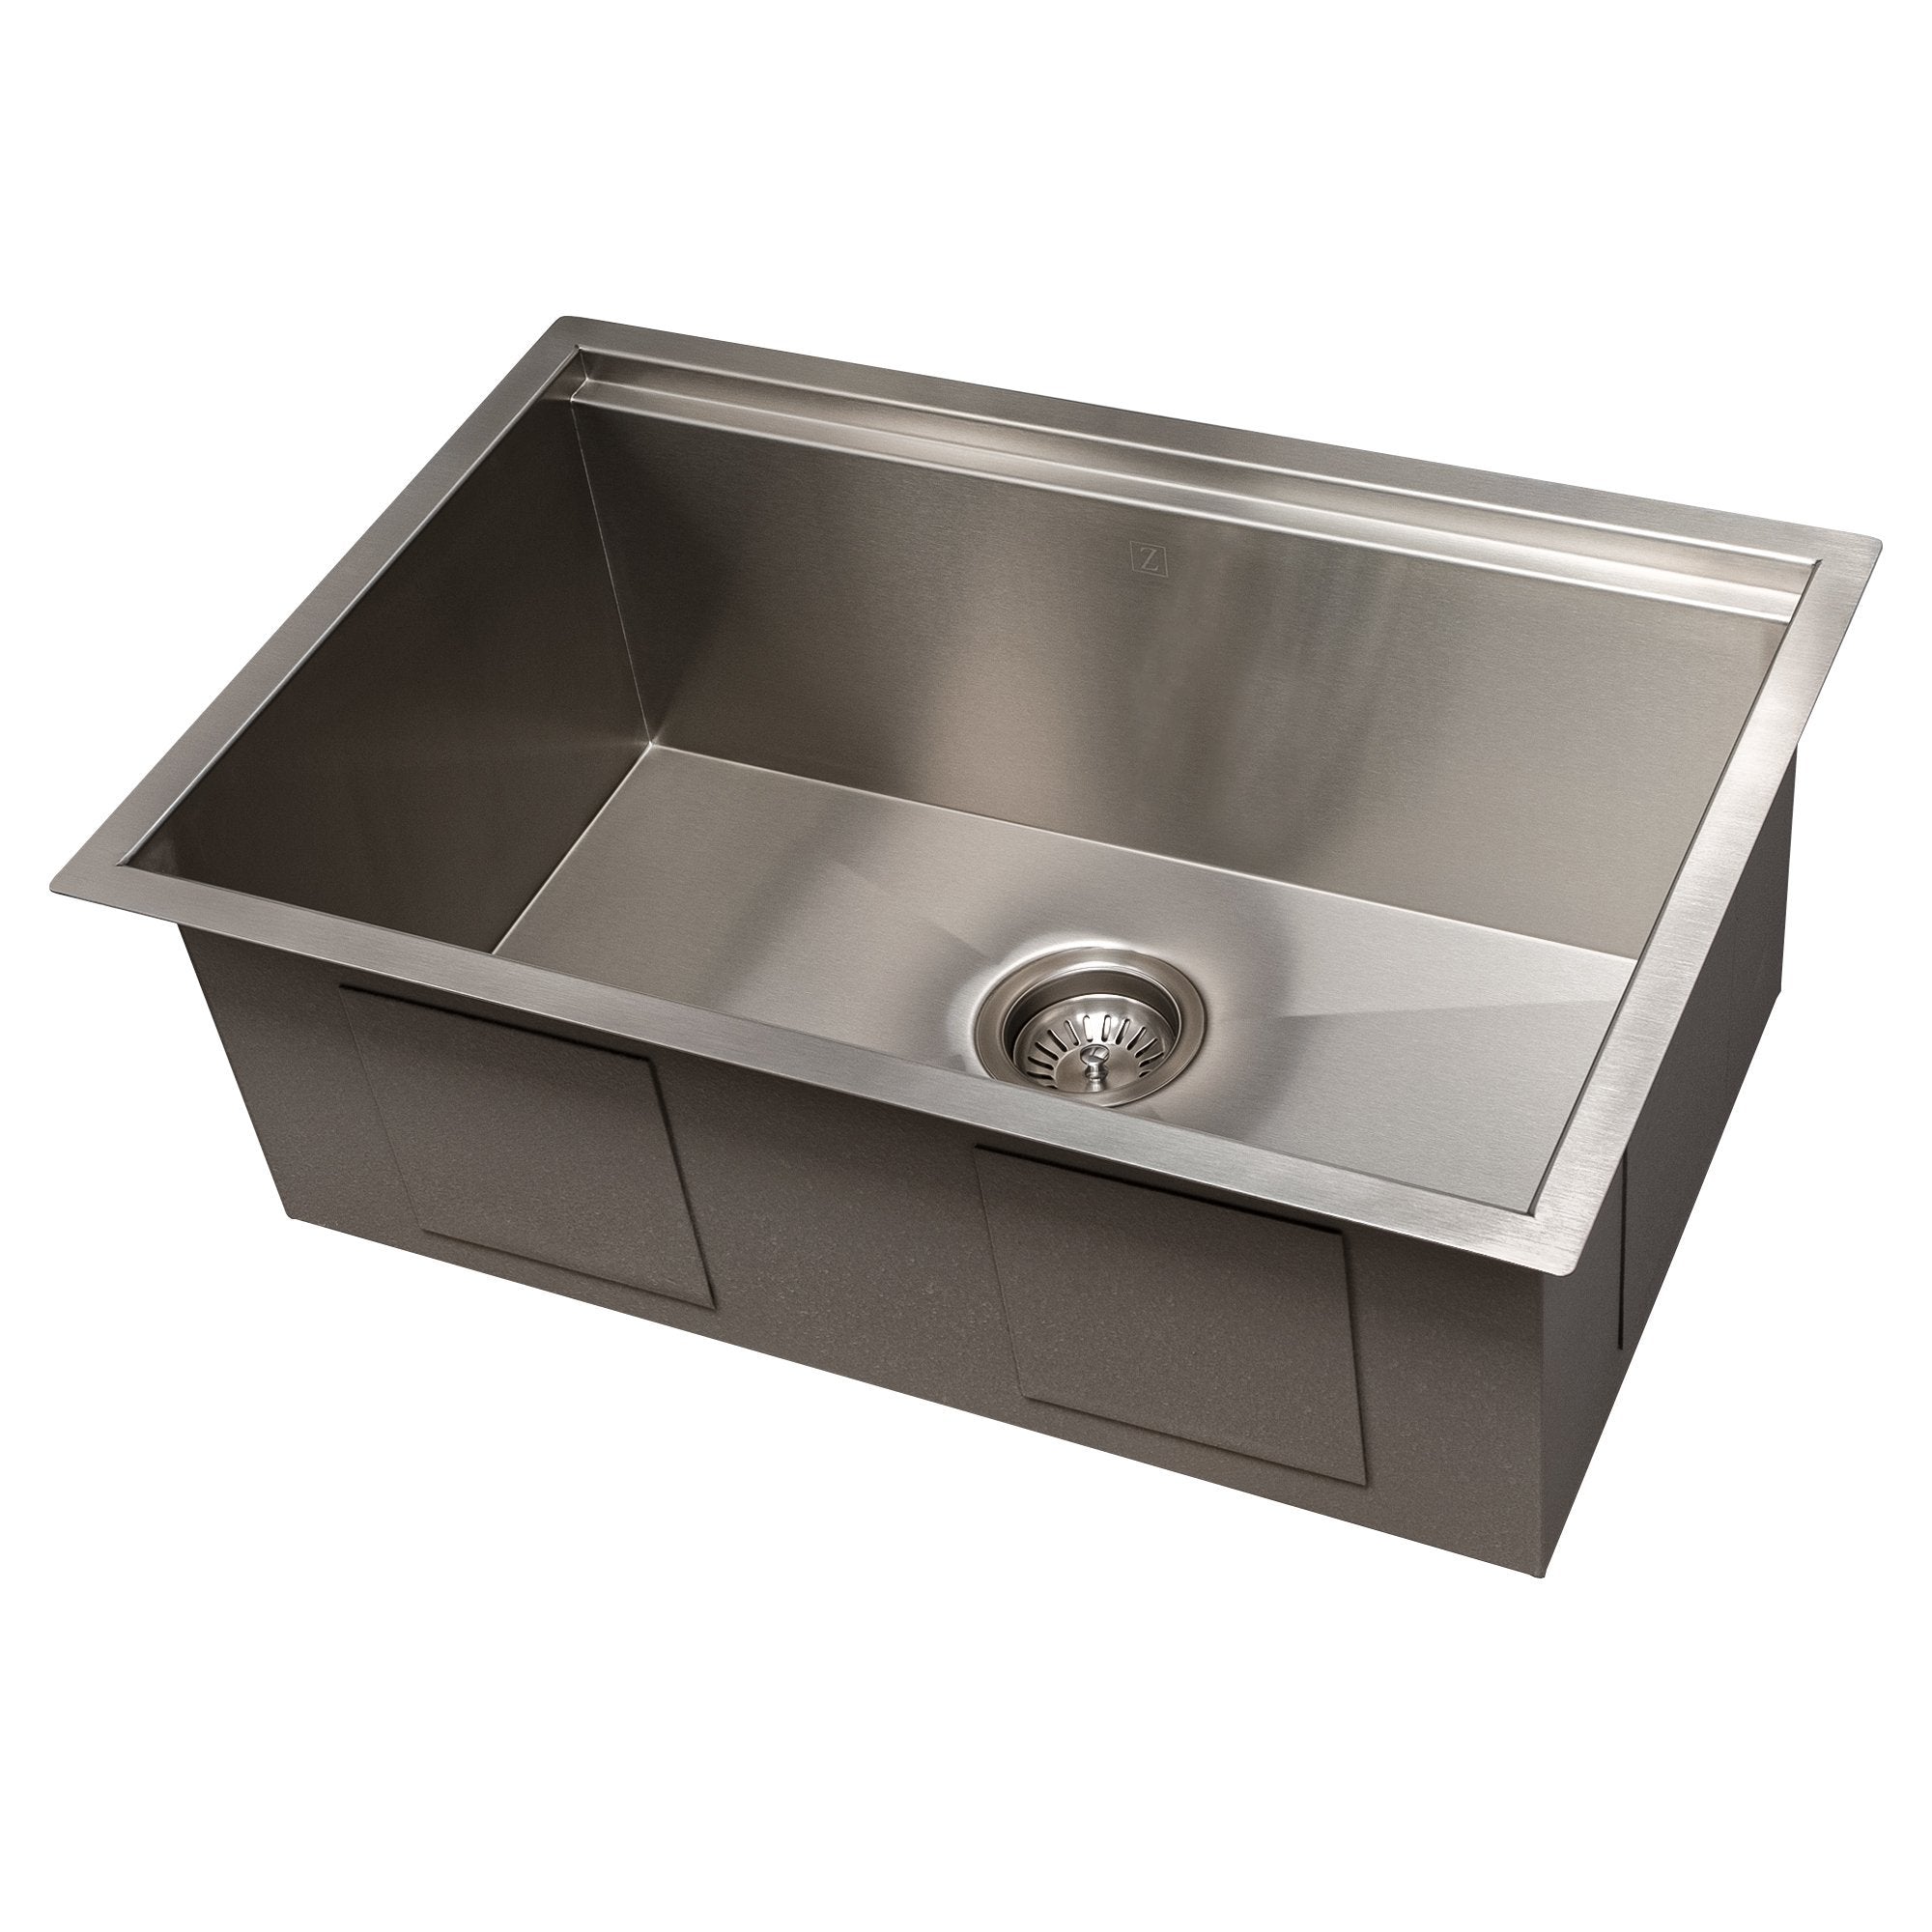 ZLINE Kitchen and Bath, ZLINE Garmisch 27" Undermount Single Bowl Sink with Accessories (SLS), SLS-27,